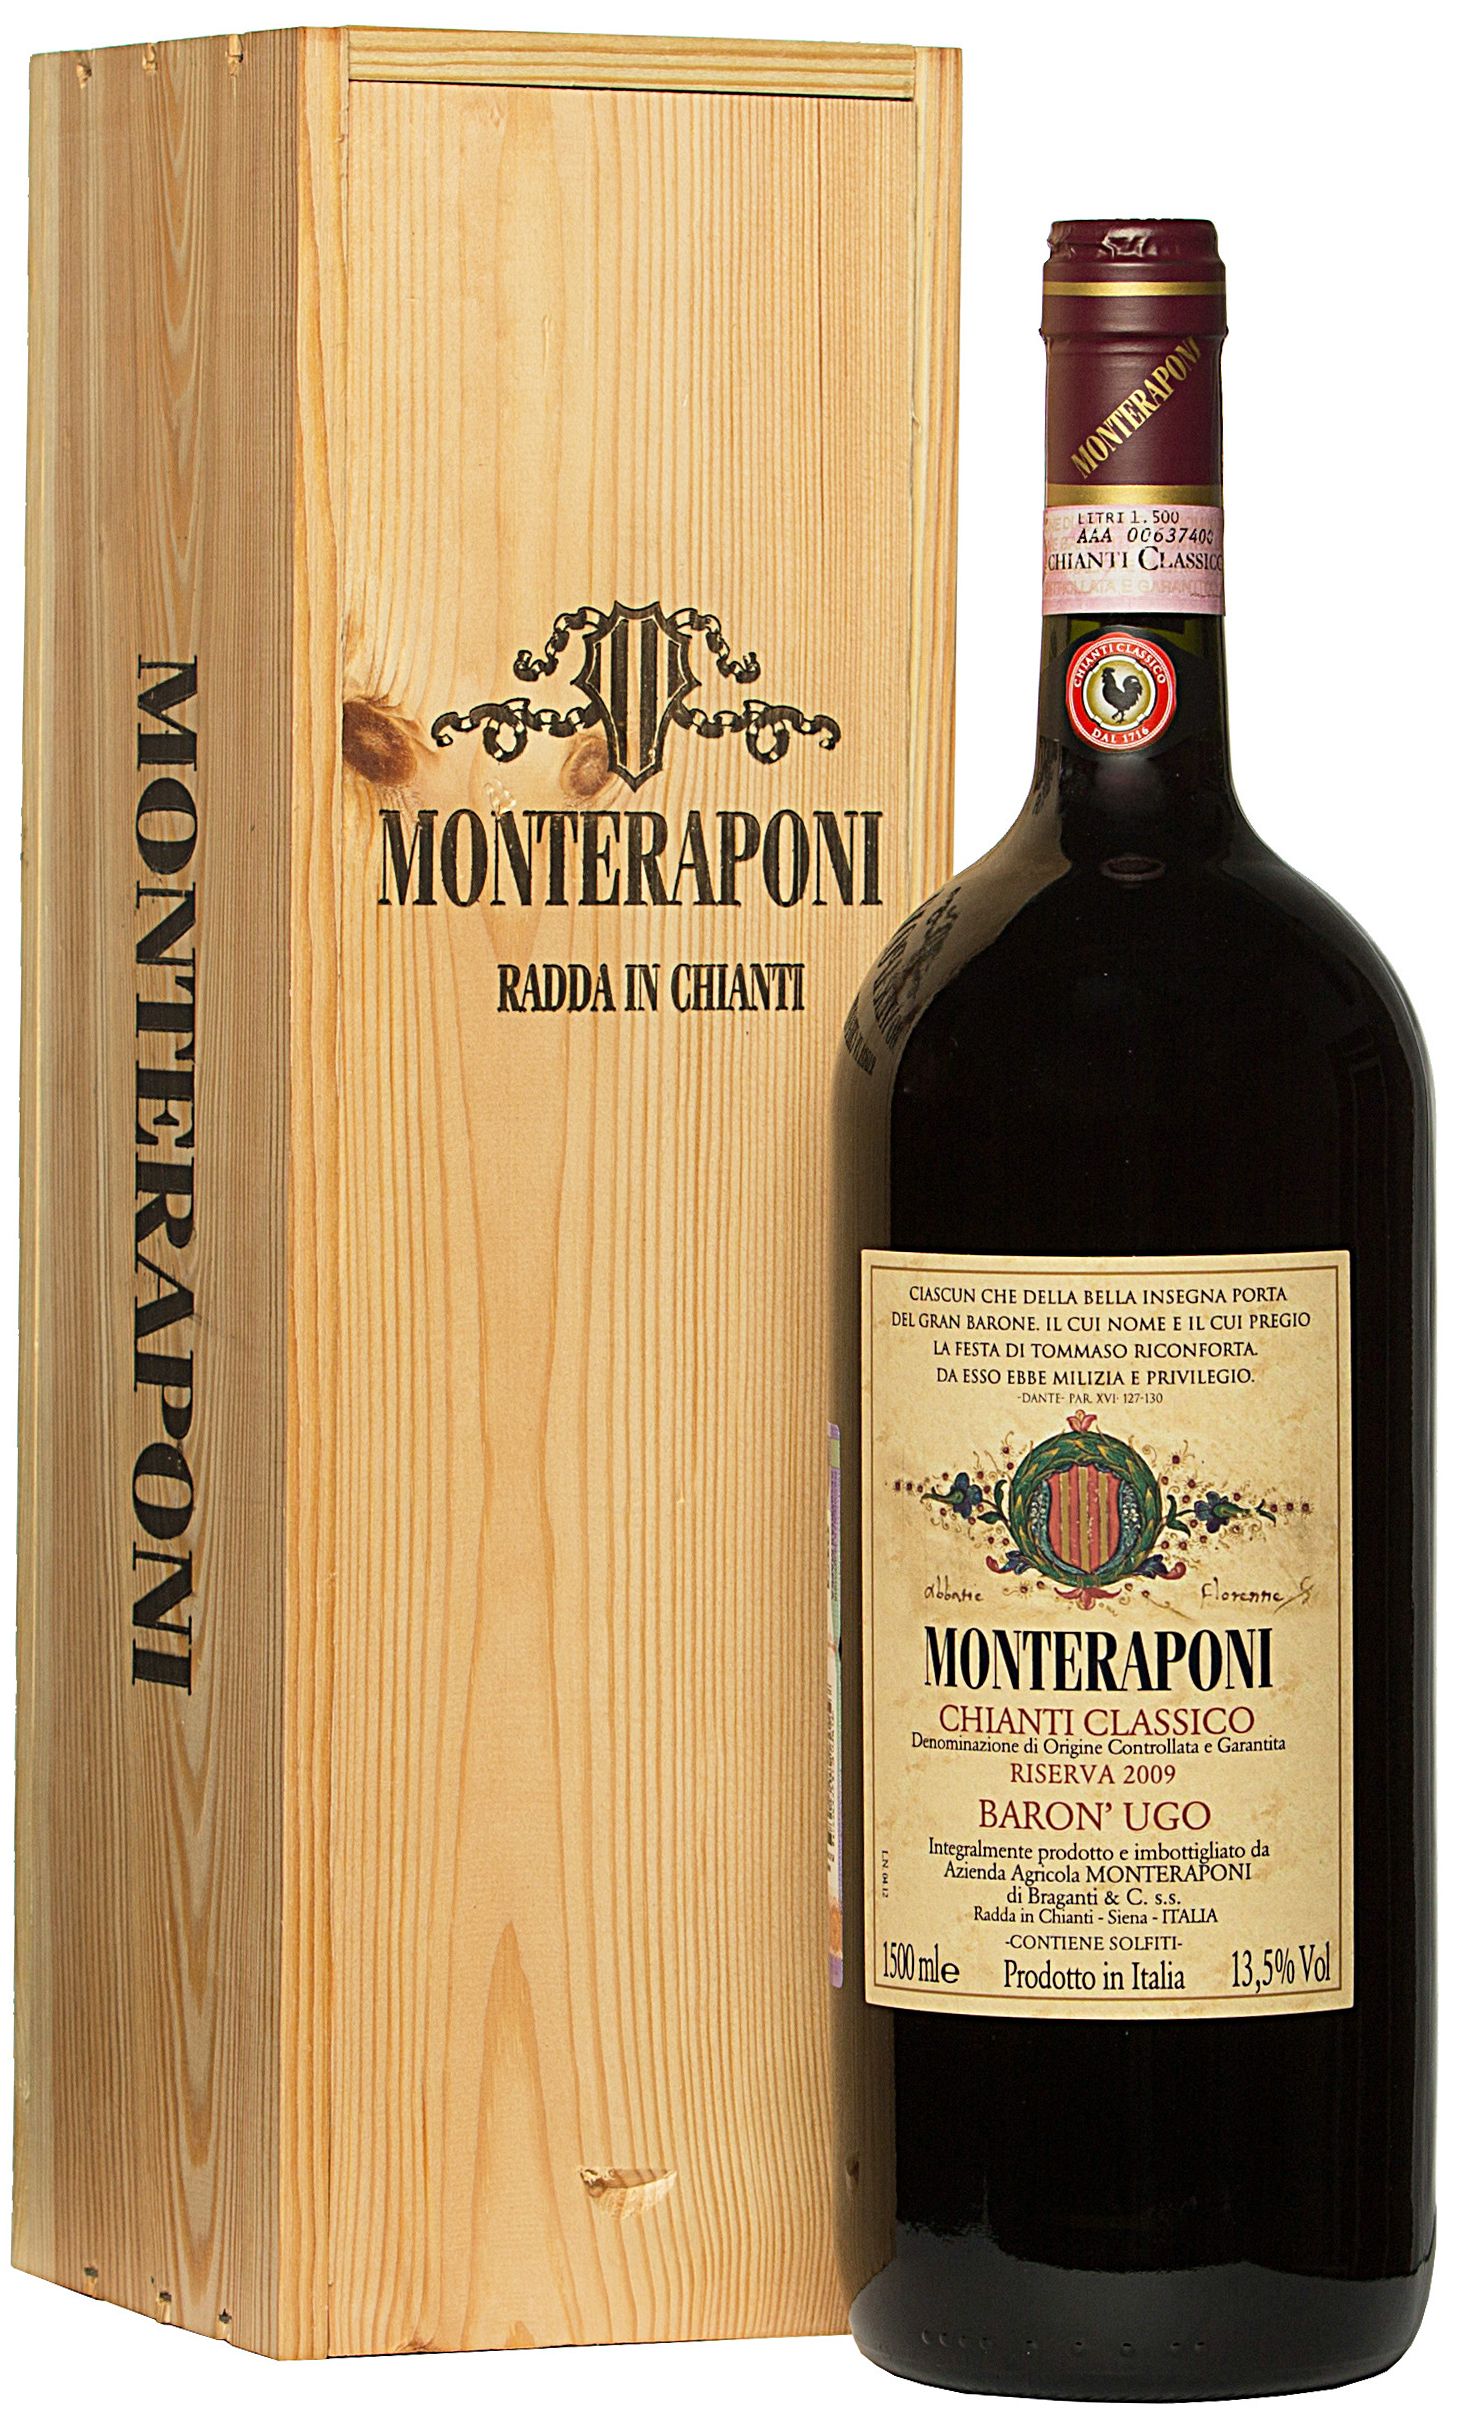 Monteraponi, Chianti Classico Riserva Baron' Ugo, 2010